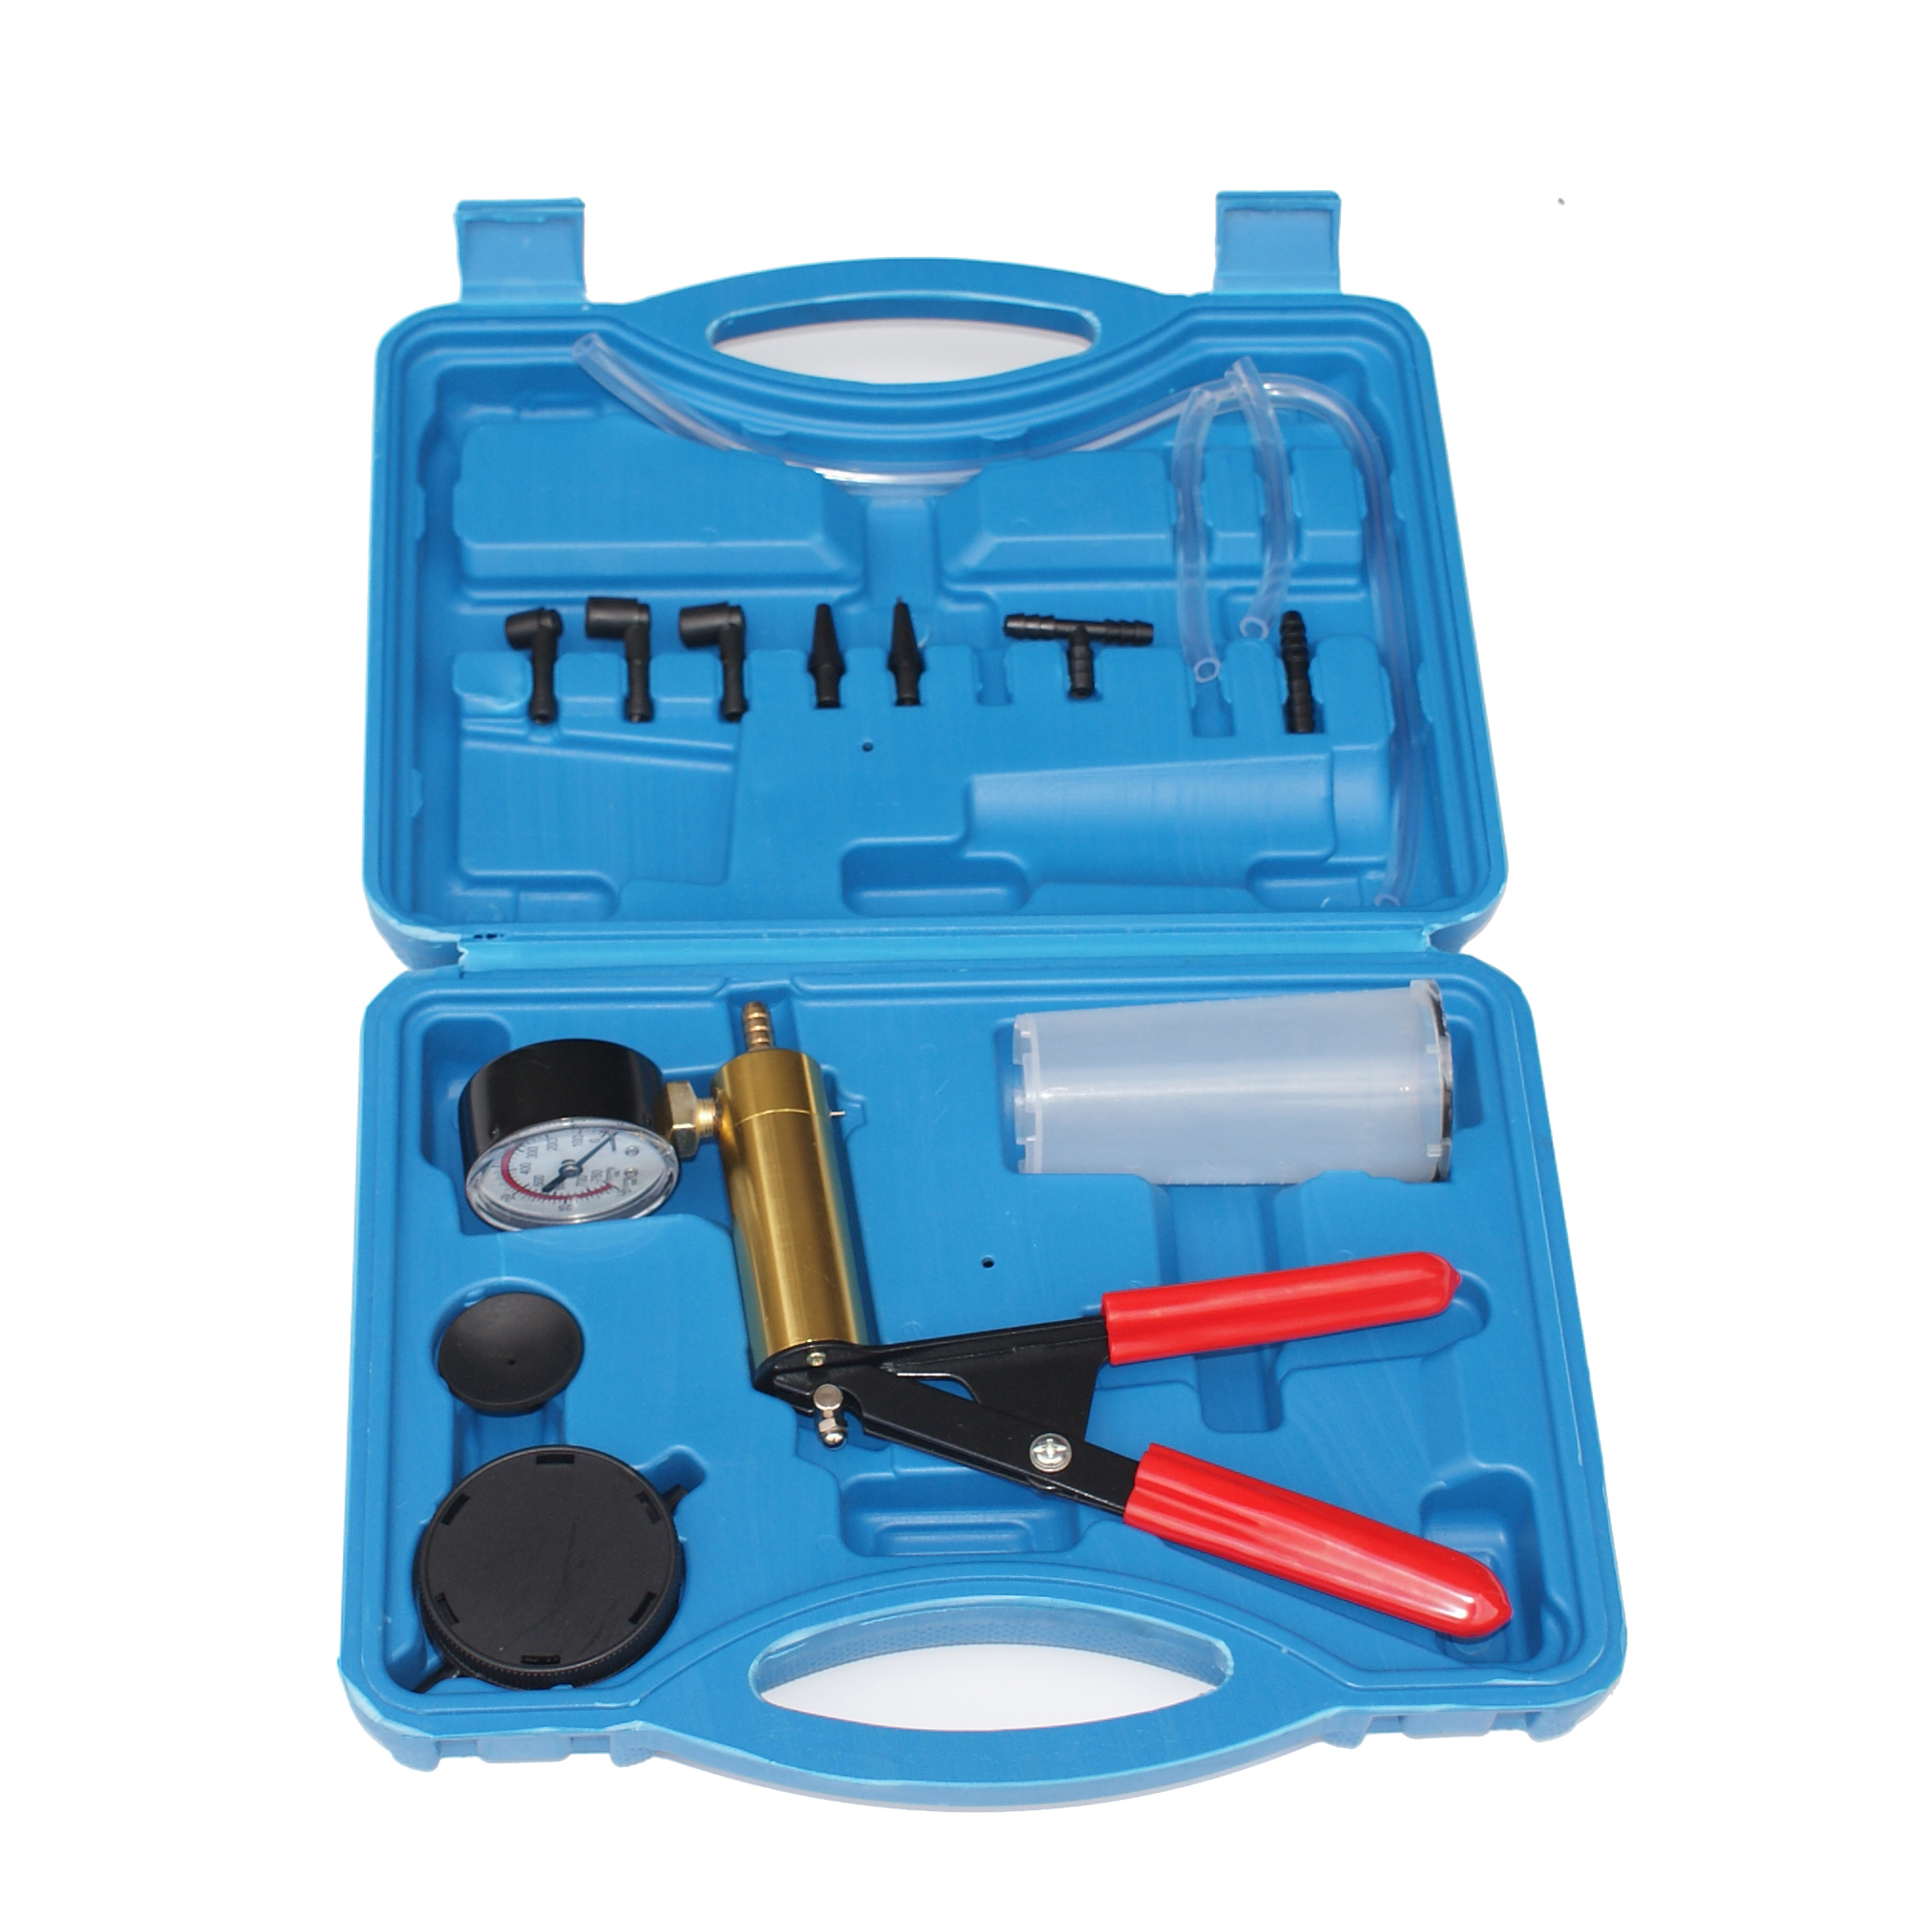 Aussel Hand Held Vacuum Pump Tester for Automotive/Truck/Motorbike Brake Fluid Bleeder Tool Set with Vacuum Gauge/Adapter Brake Bleed Kit